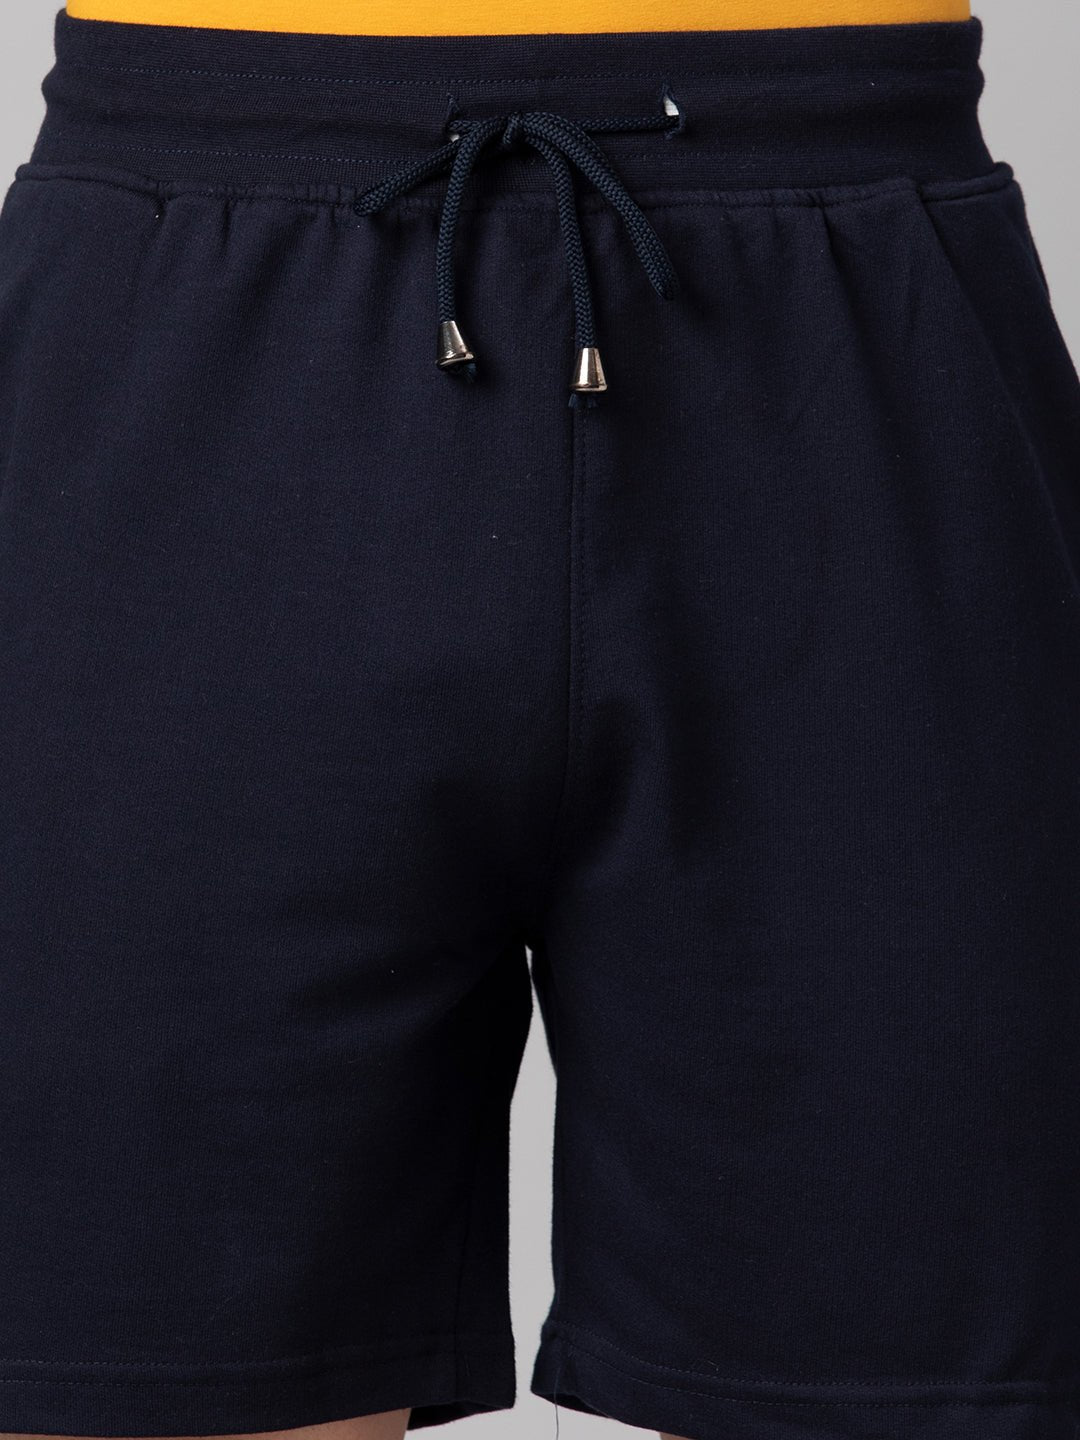 Navy Blue Shorts - clubyork